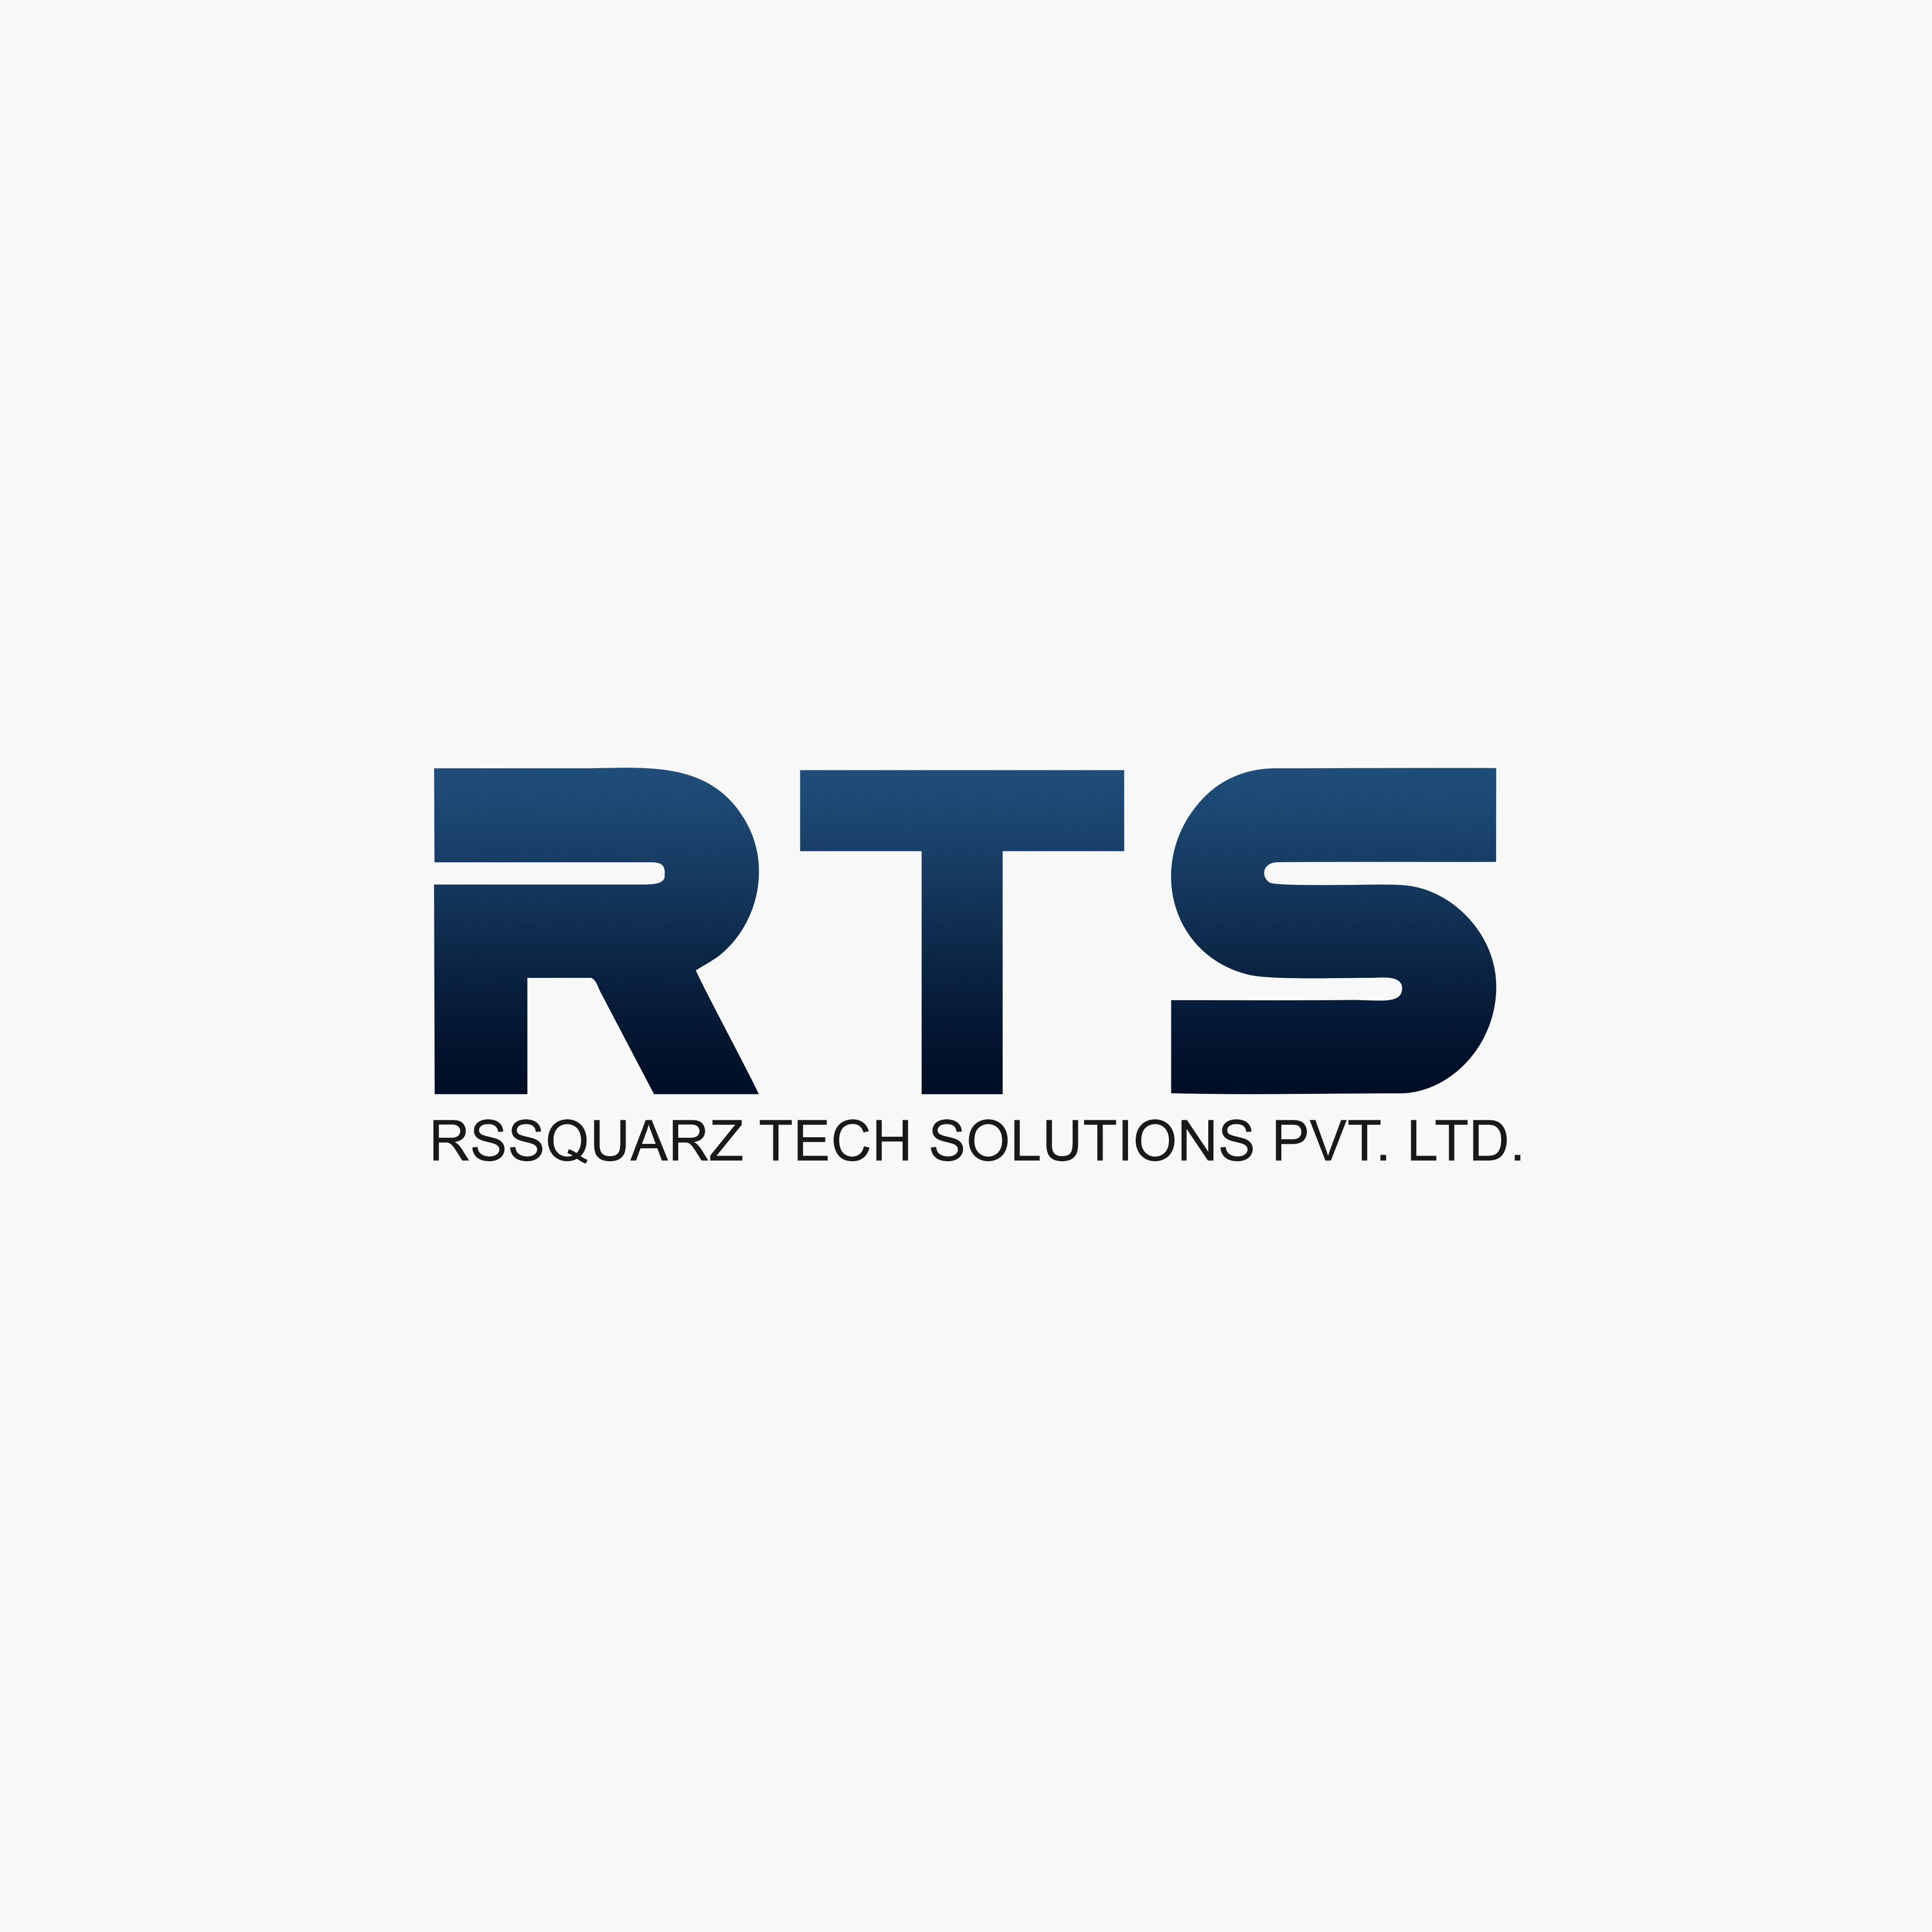 RSsquarz Tech Solutions Pvt Ltd 